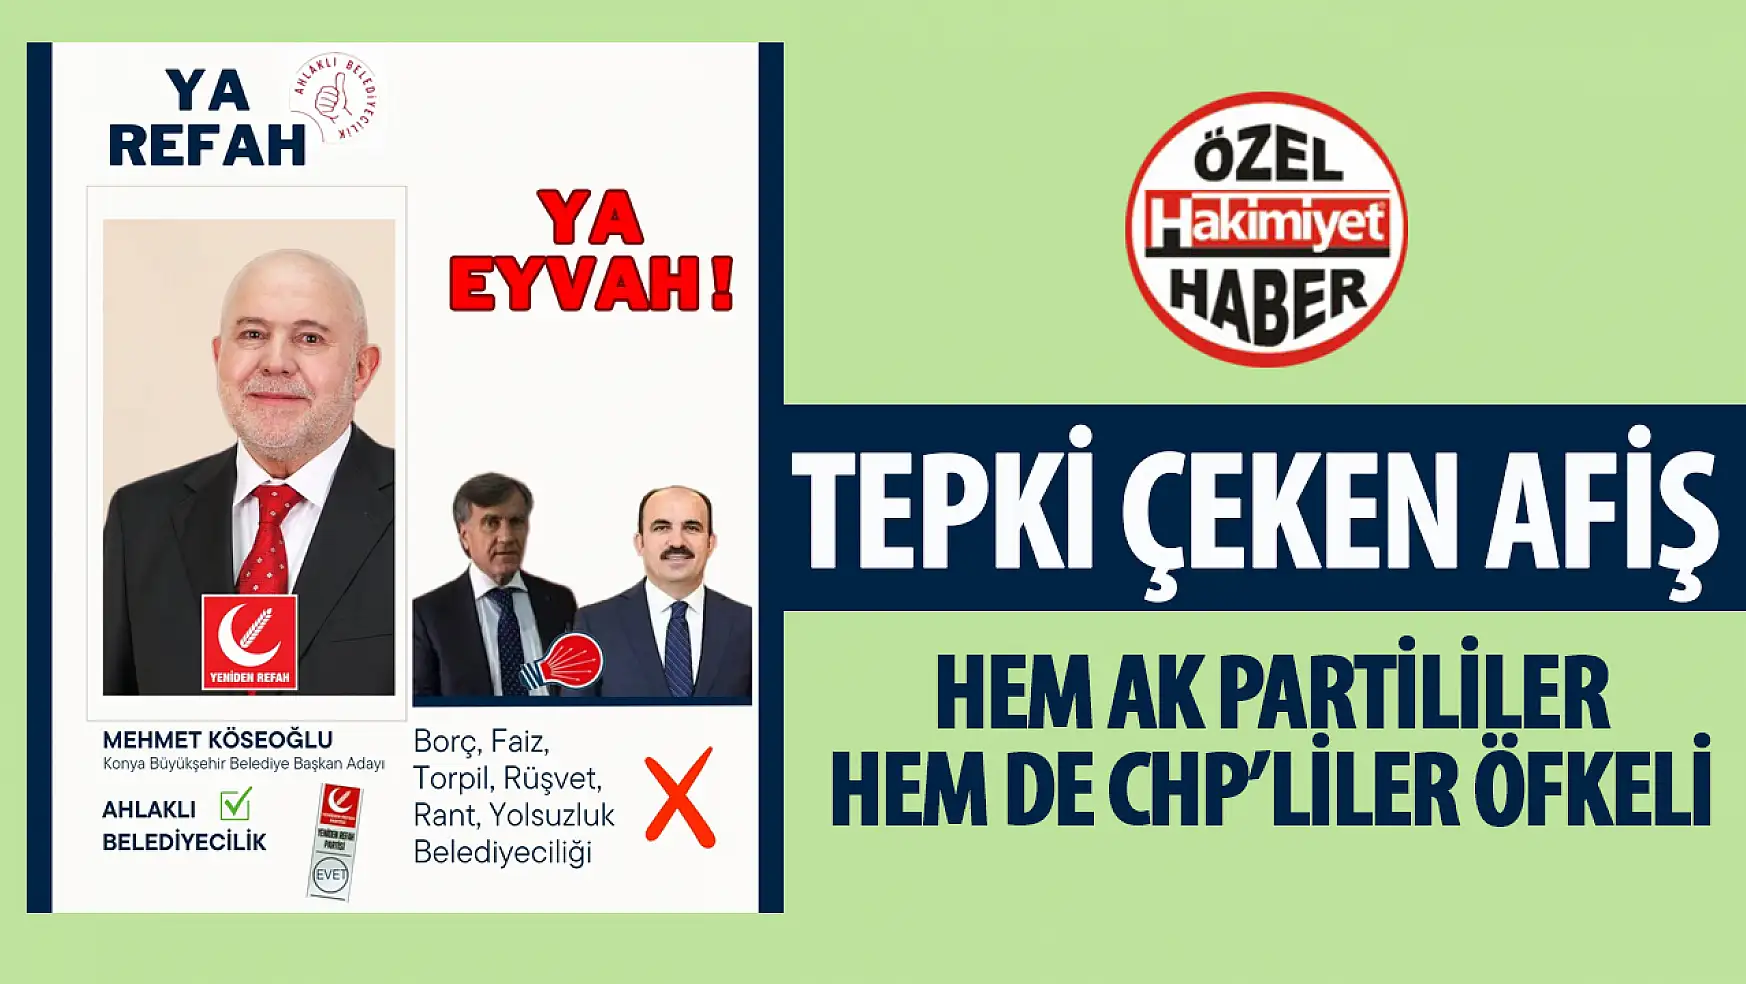 Konya'da Seçim Afişinde Sert Eleştiriler: 'Ahlaklı Belediyecilik Partisi' Tartışması 